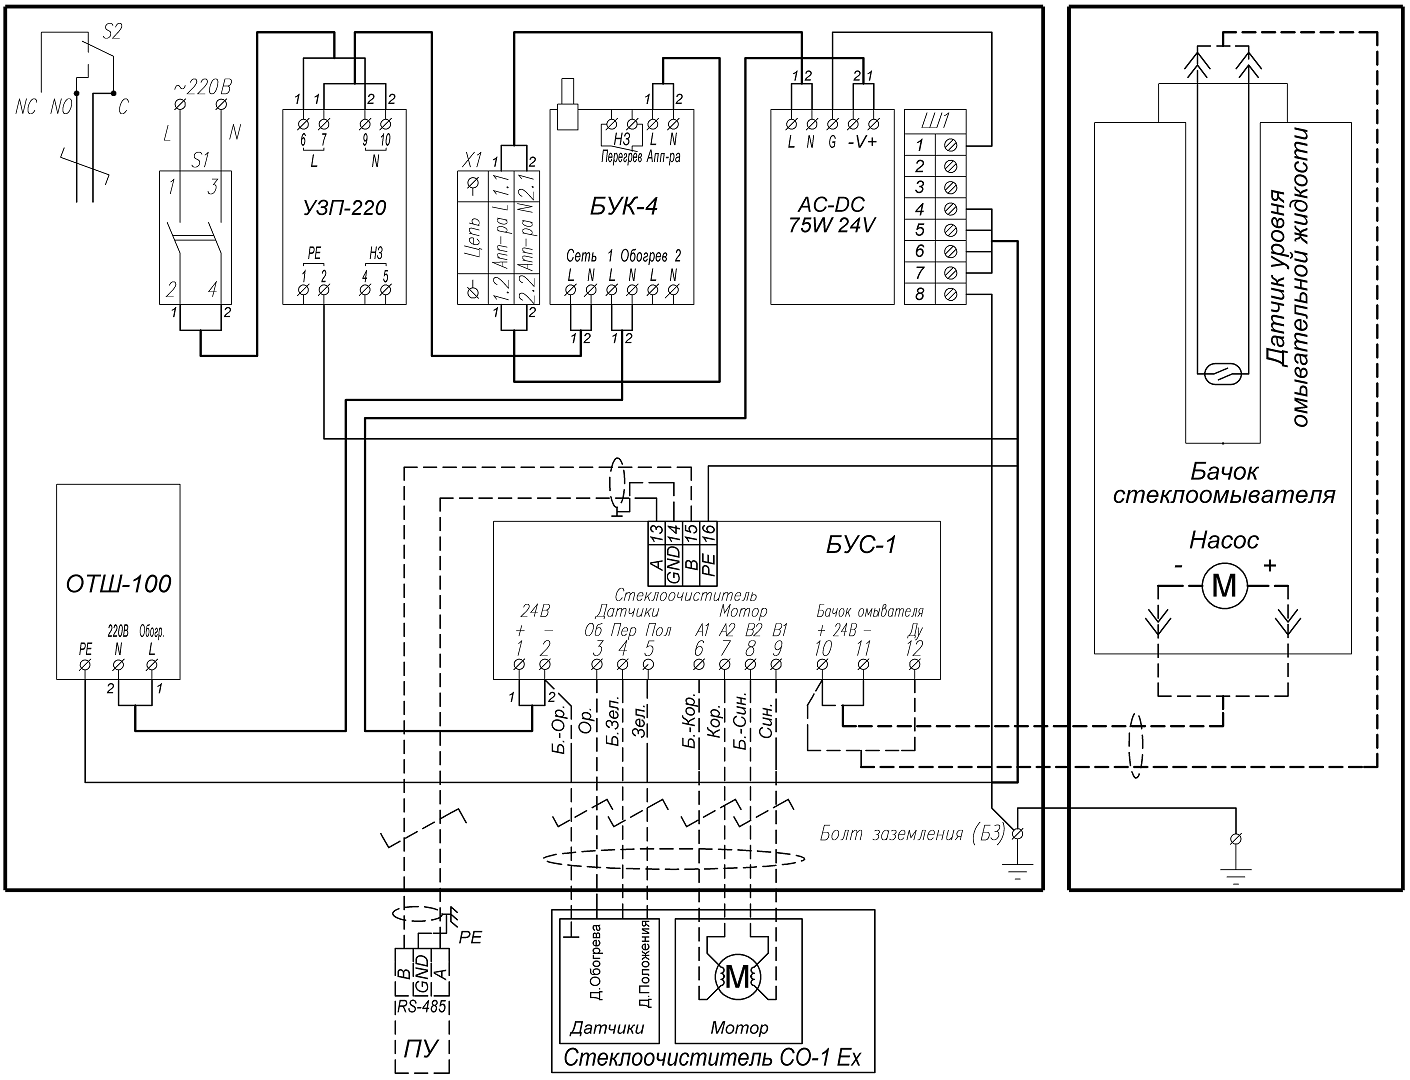 Схема подключения стеклоочистителя, омывателя, бачка омывателя и пульта управления оператора (в комплект поставки не входит) к БУС-1